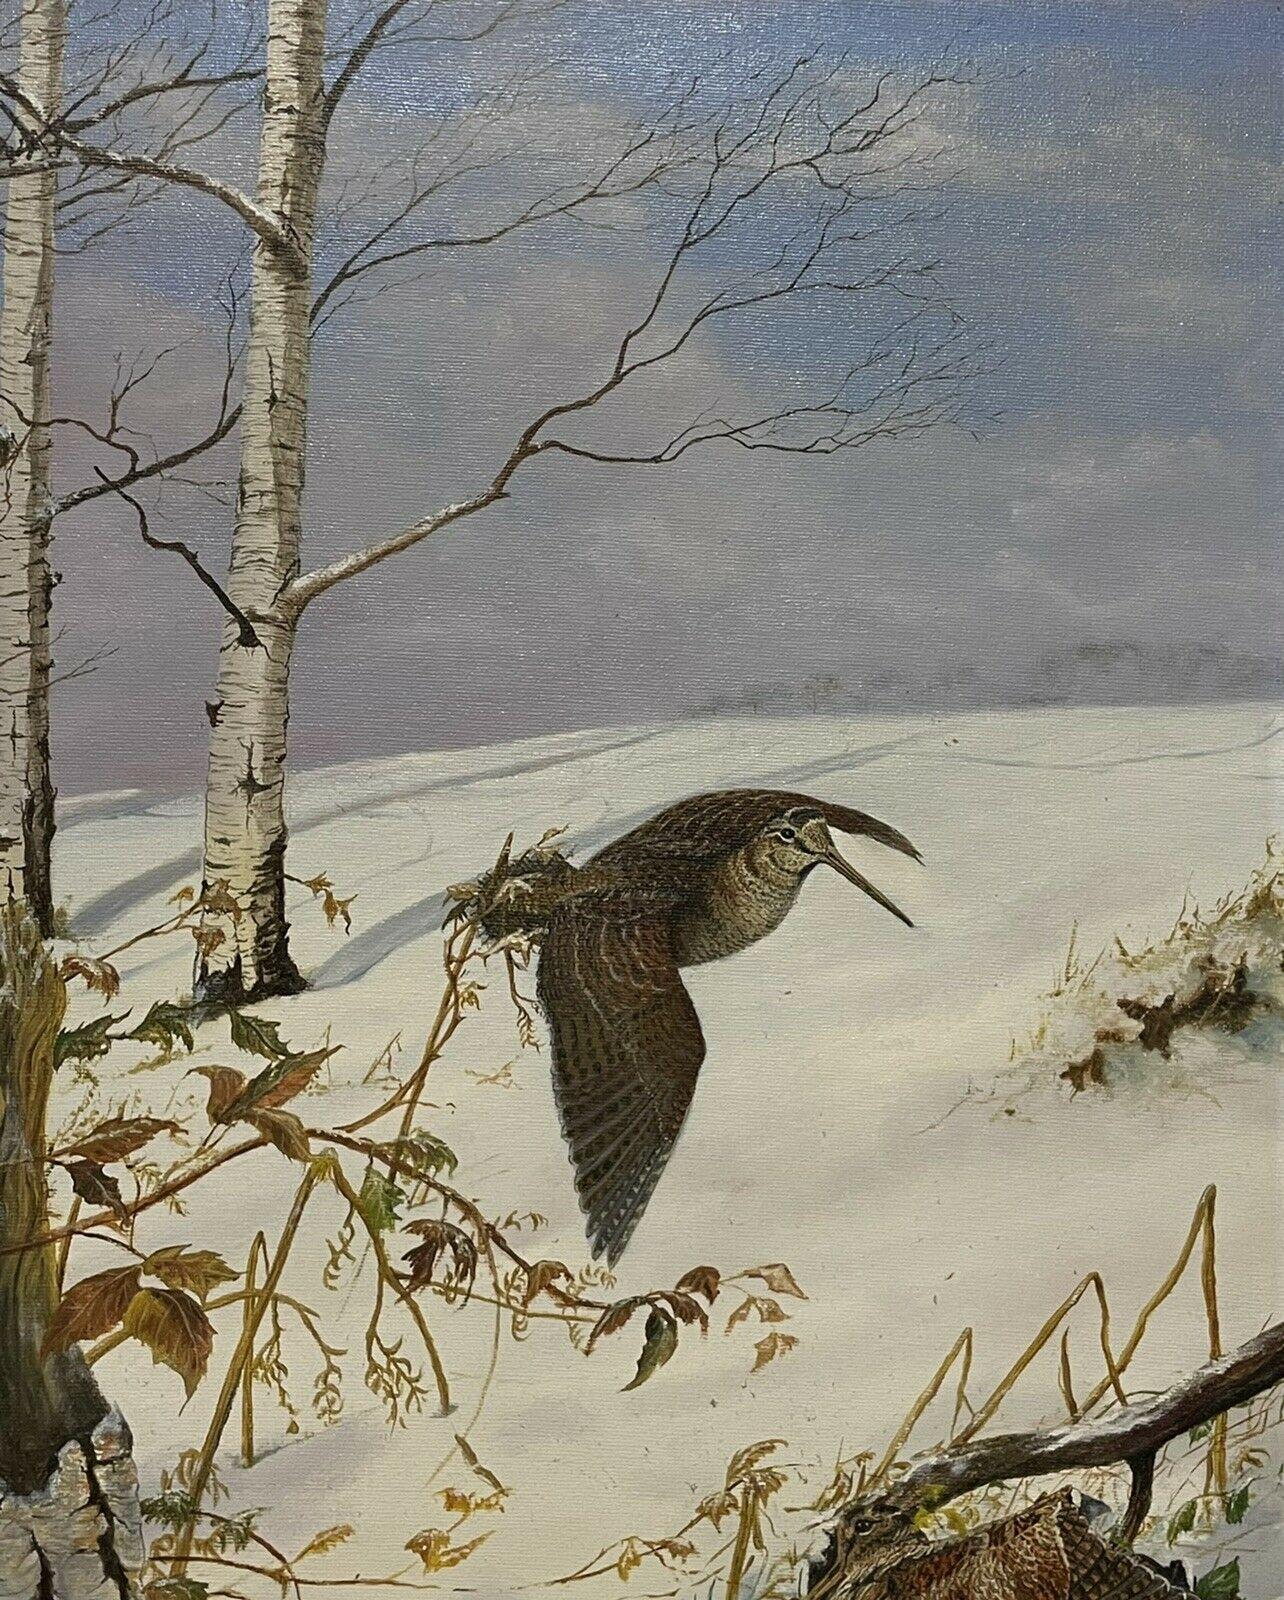 Animal Painting British Sporting Art - Woodcock/ Pichet dans un paysage de neige d'hiver, peinture à l'huile d'art sportif britannique